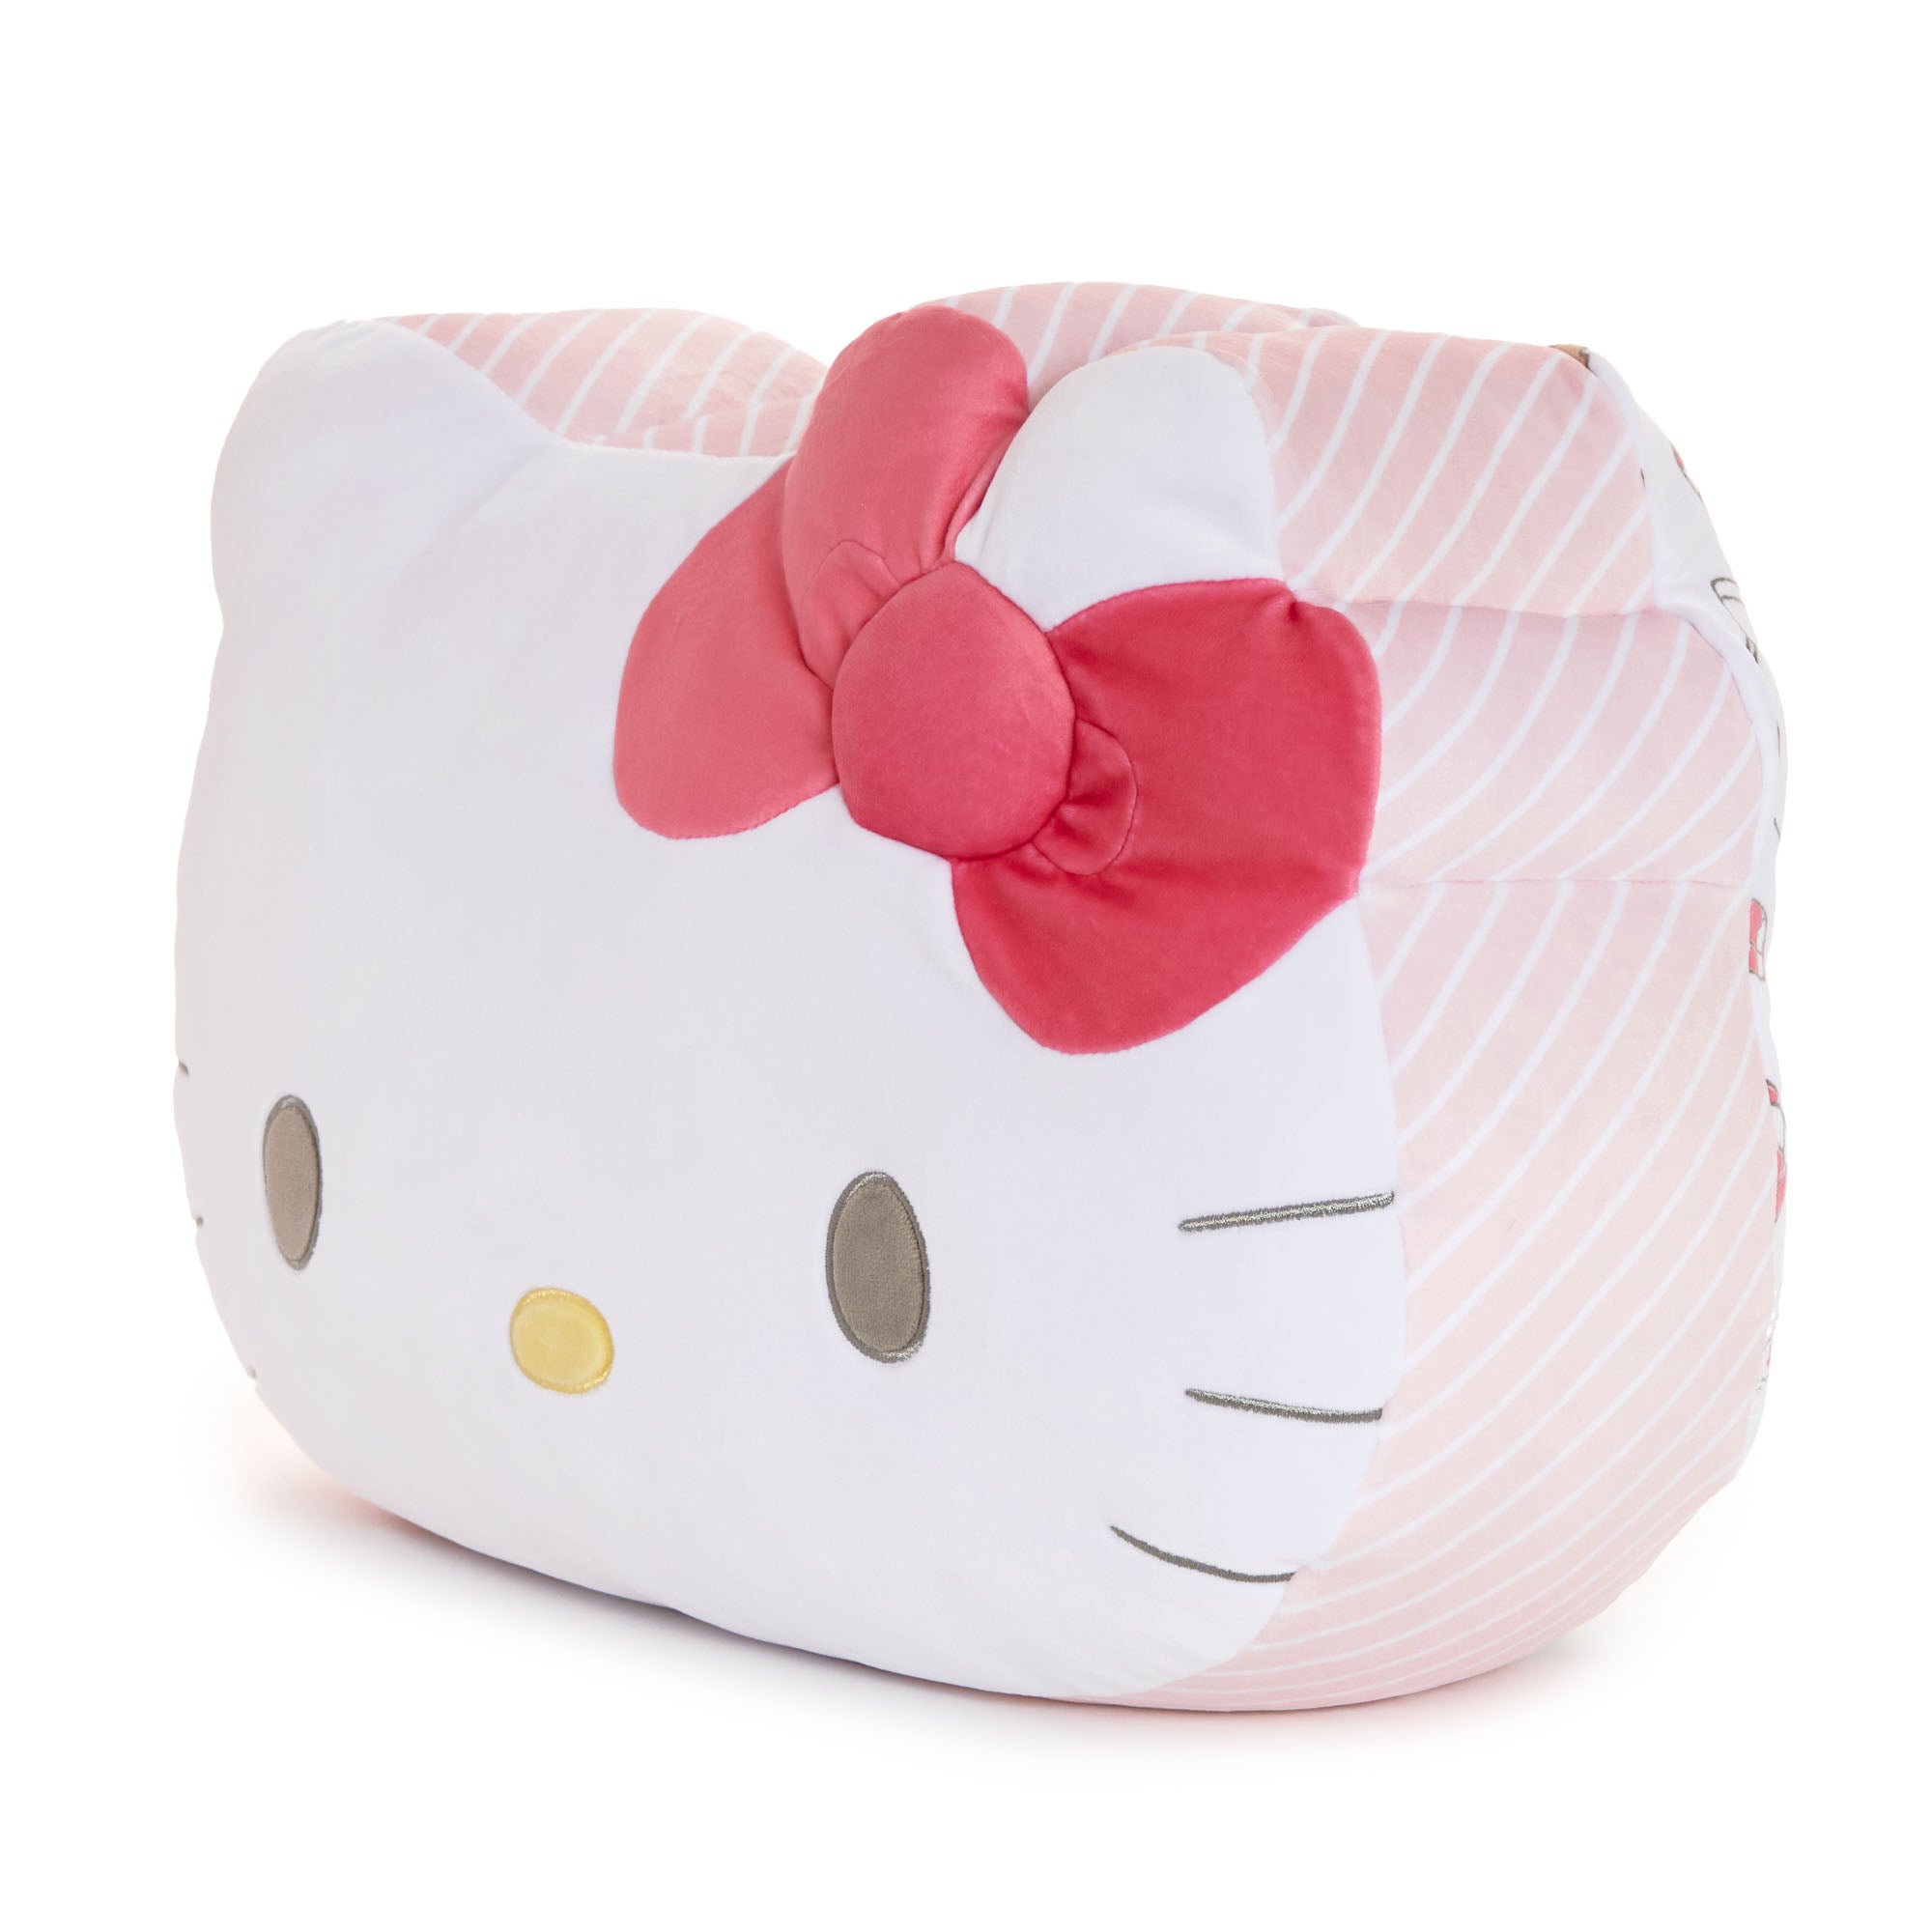 Hello Kitty Cafe Las Vegas Throw Pillow (White)